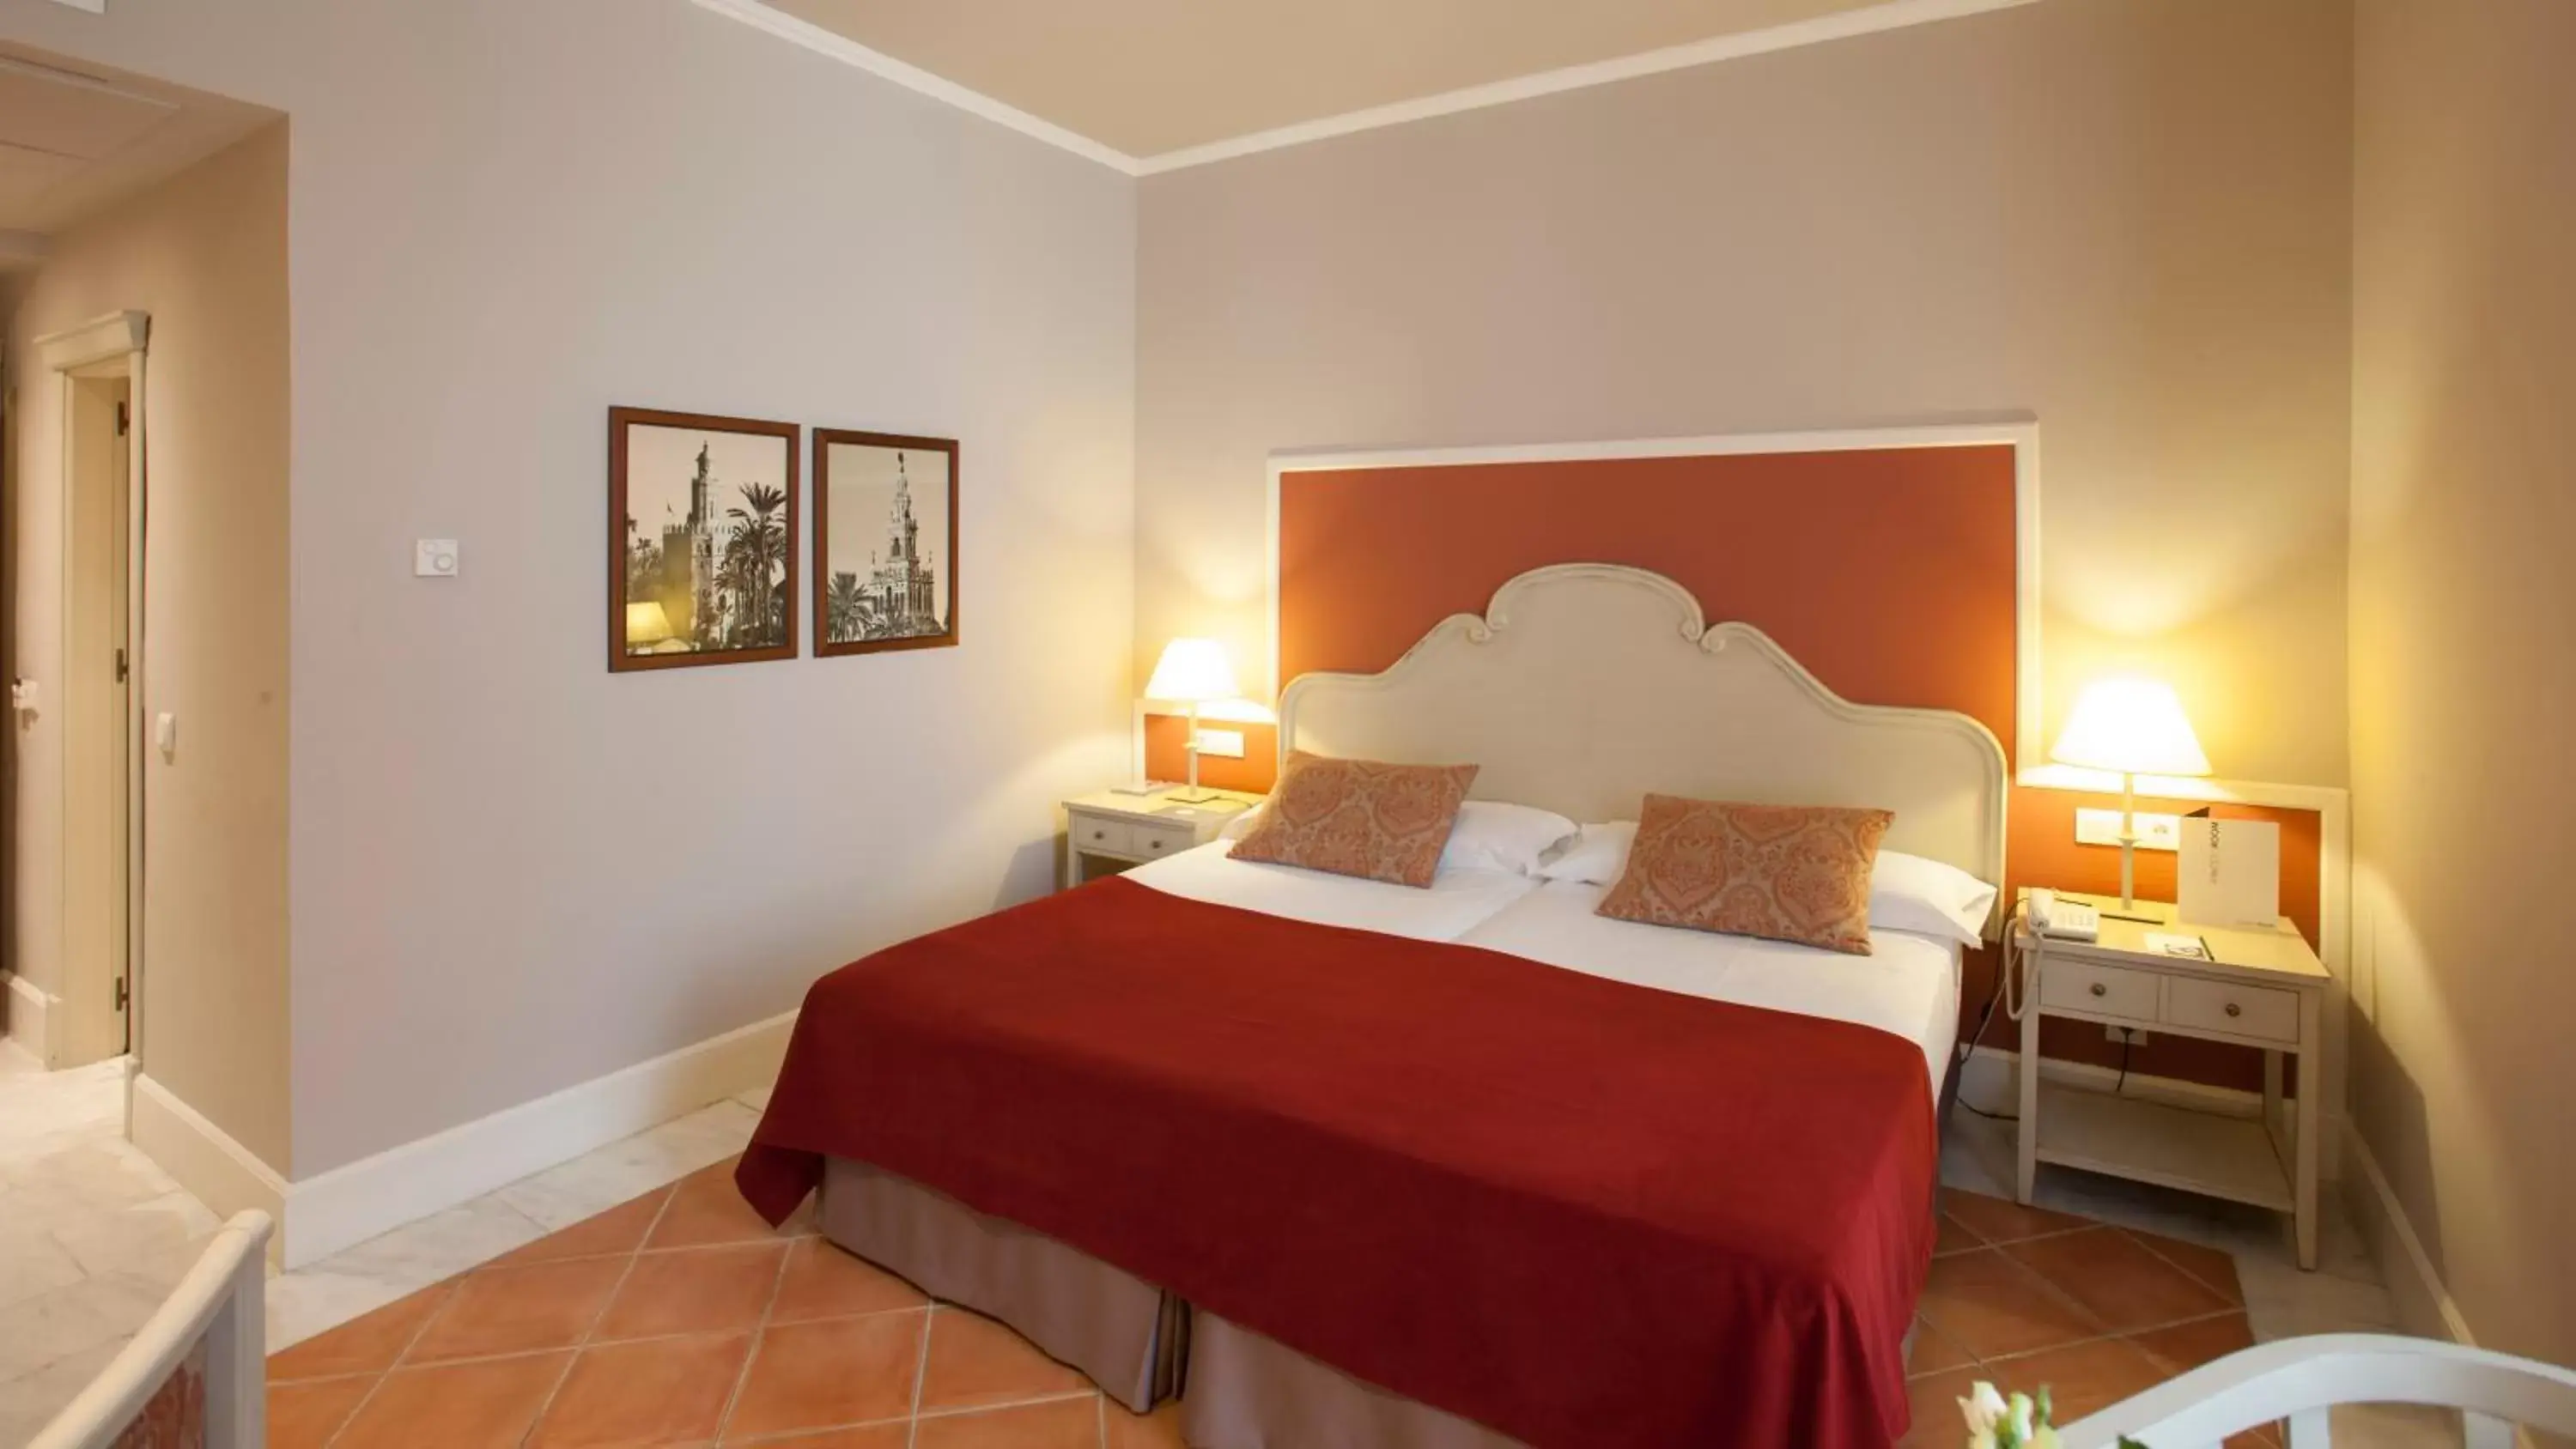 Bed, Room Photo in Vincci La Rabida